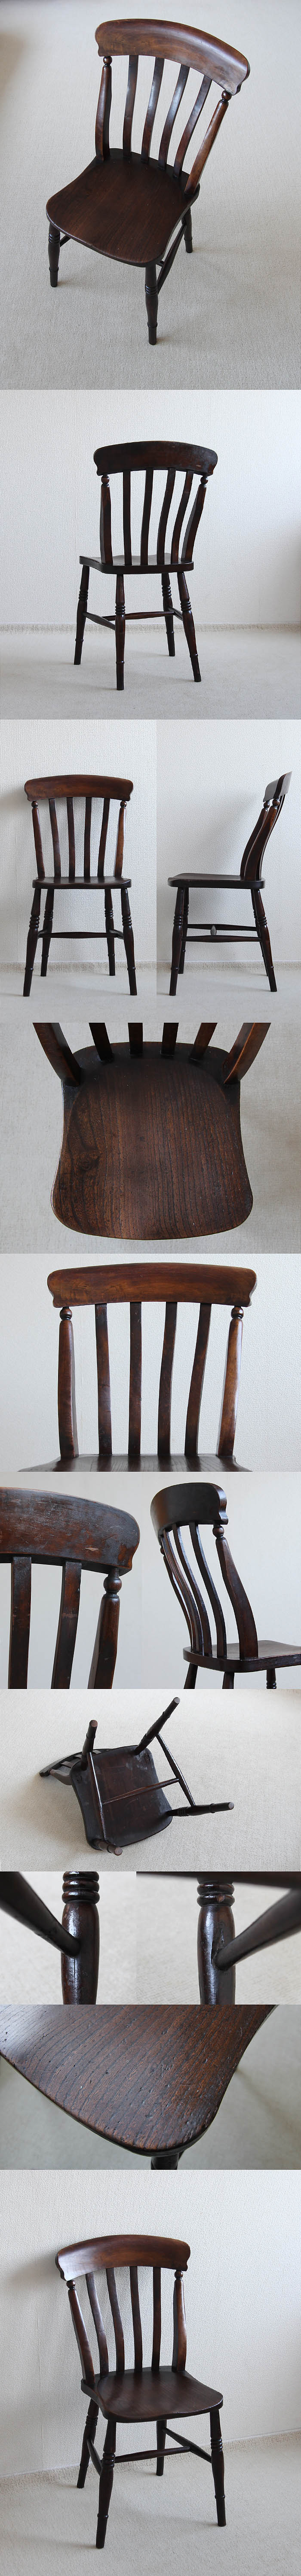 イギリス アンティーク ラスバックチェア 木製椅子 無垢材 英国 家具「キッチンチェア」P-042